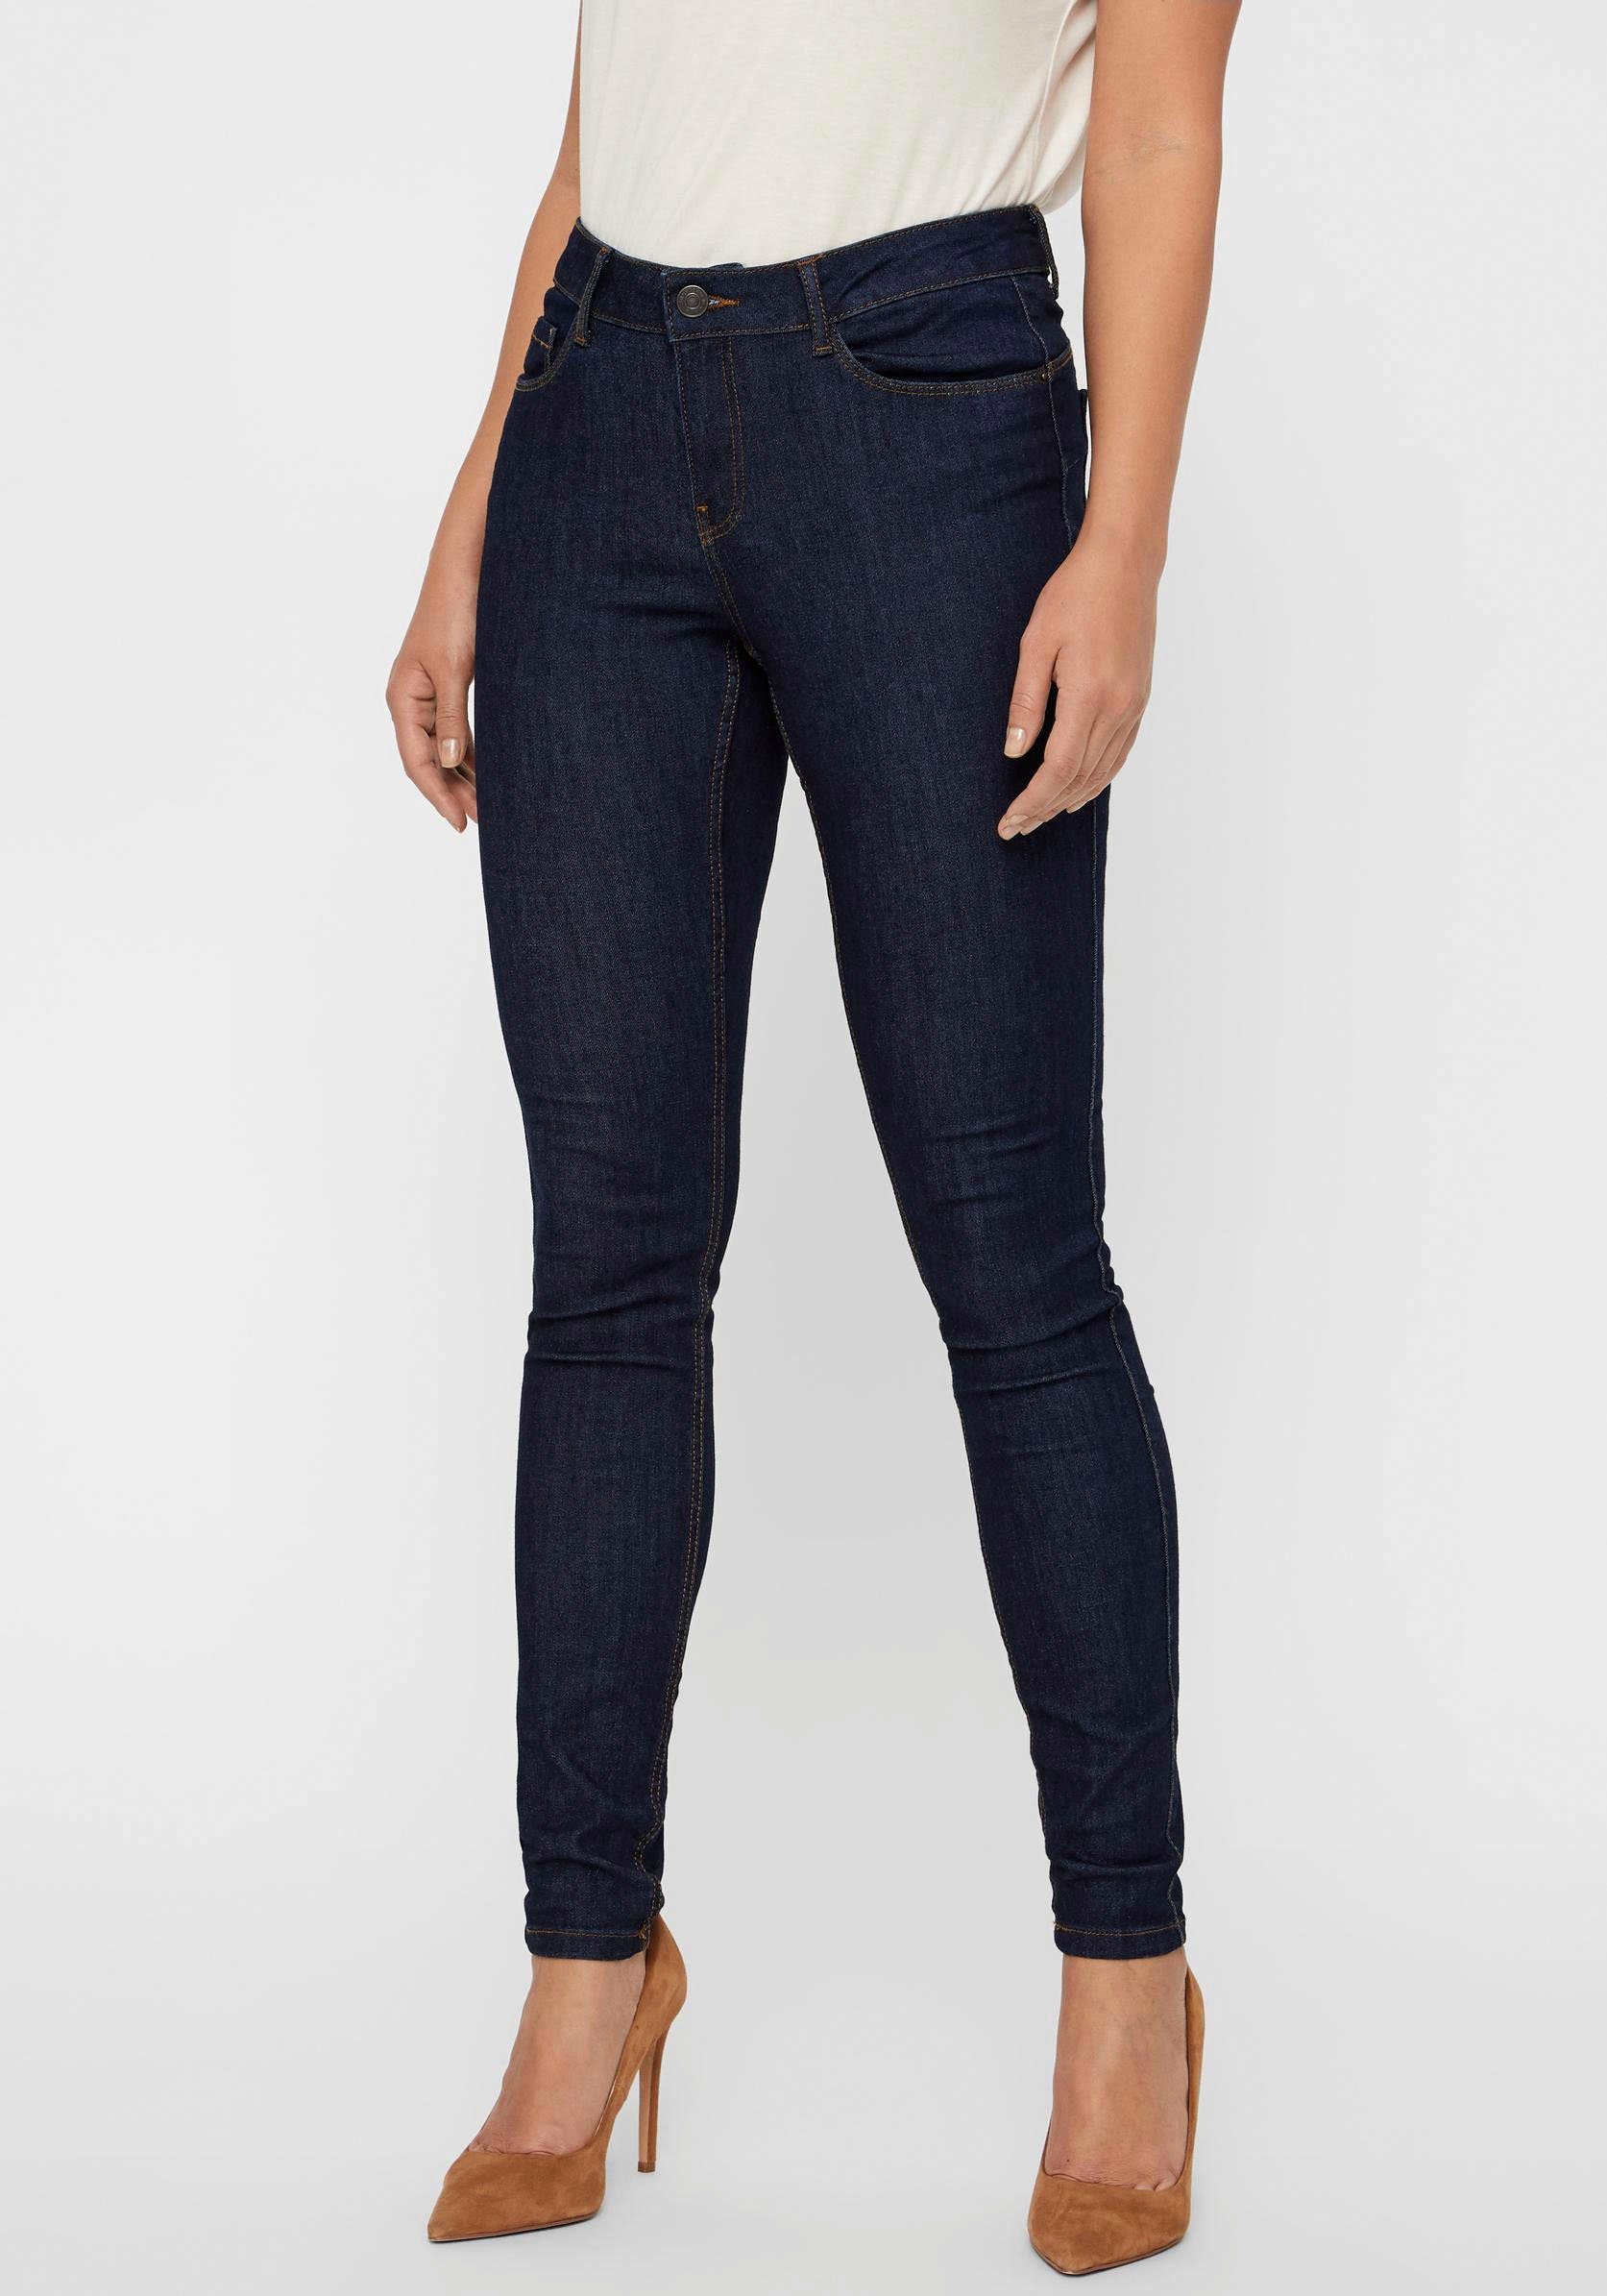 180 S/32 ist VMSEVEN Das Größe Vero Skinny-fit-Jeans UP, SHAPE Model und cm trägt Moda groß